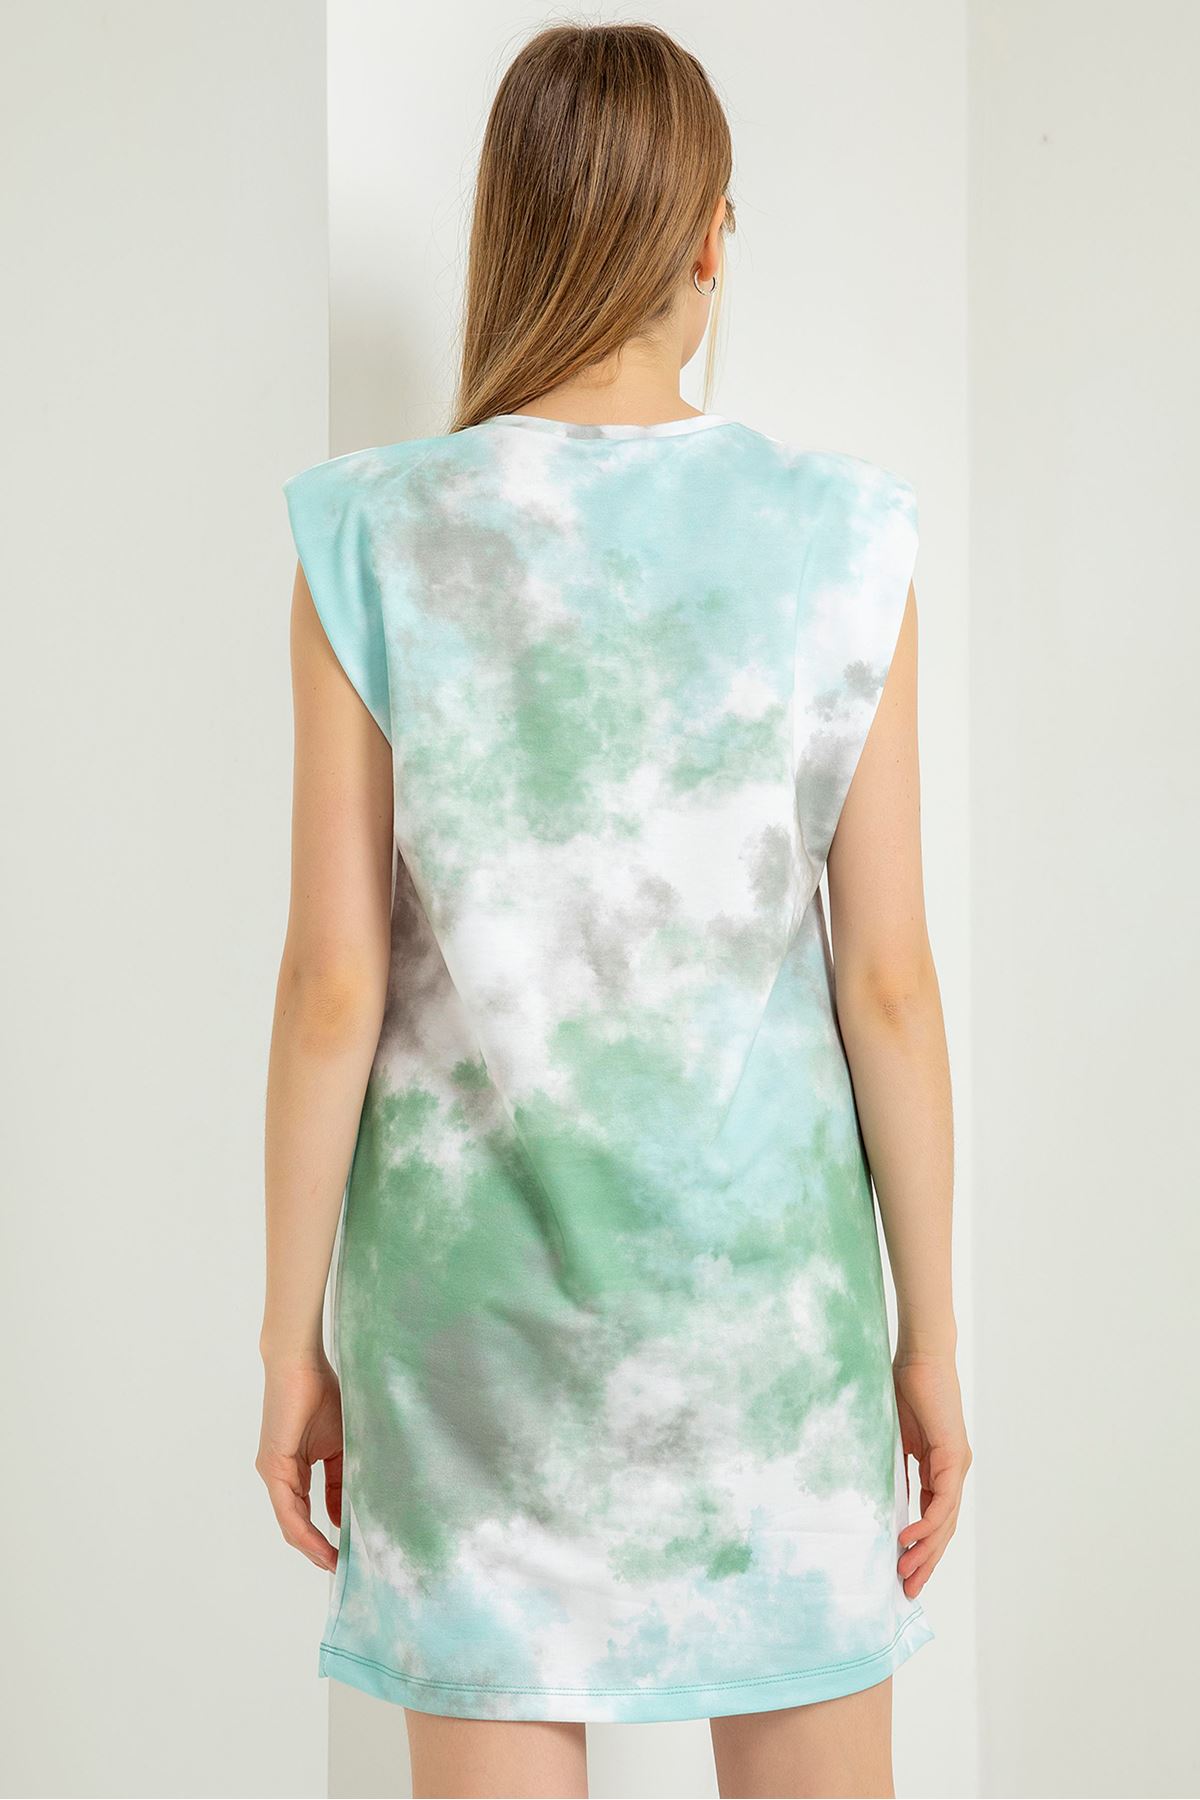 Трикотажная ткань облачный принт женское платье с подплечниками - Зелёный